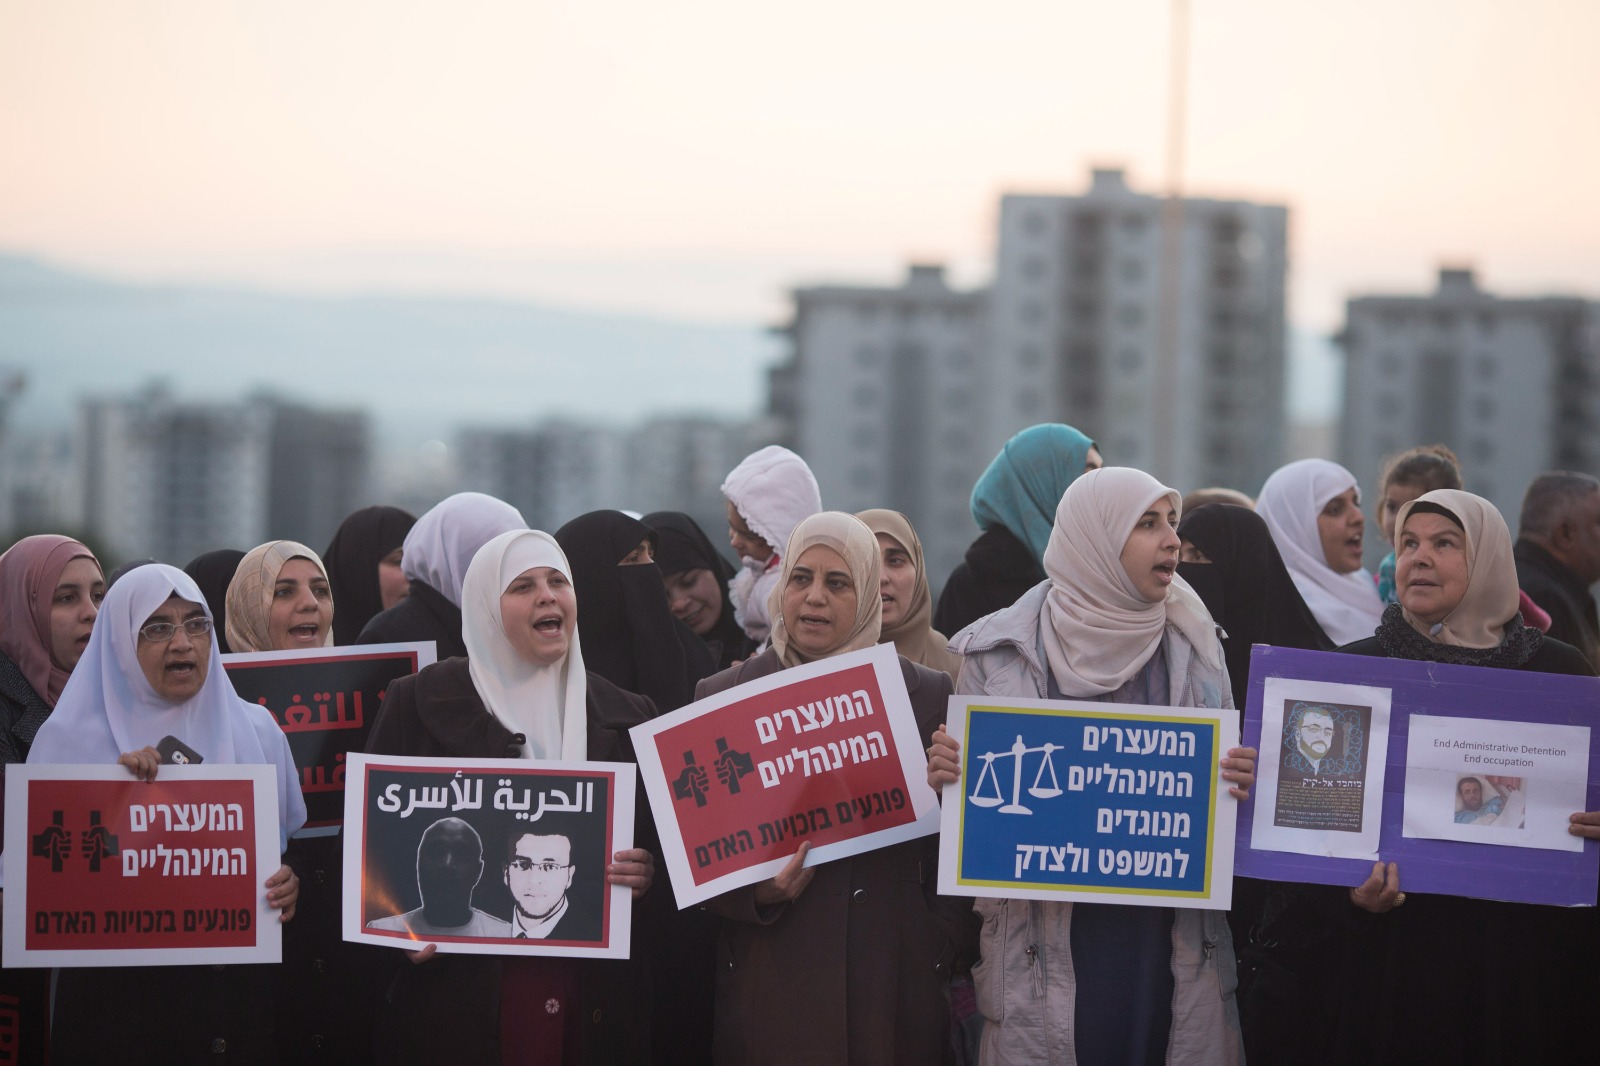 שביתות רעב עוררו הזדהות בחברה הפלסטינית. הפגנת הזדהות עם שובת הרעב מוחמד אל קיק ב-2016 בעפולה (צילום: אורן זיו)